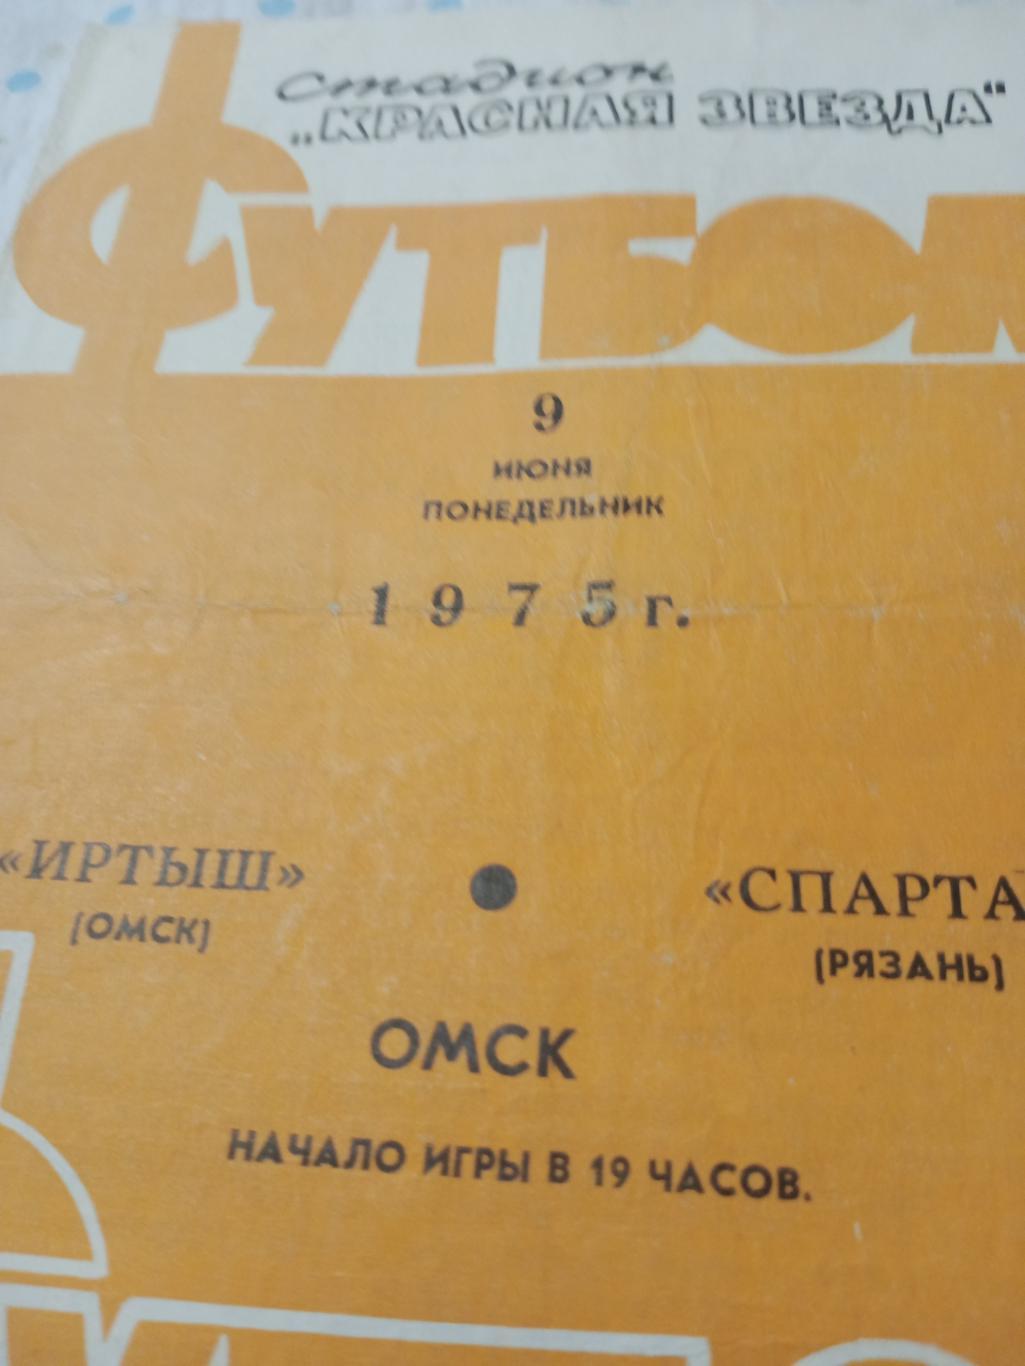 Иртыш Омск - Спартак Рязань - 9.06.1975